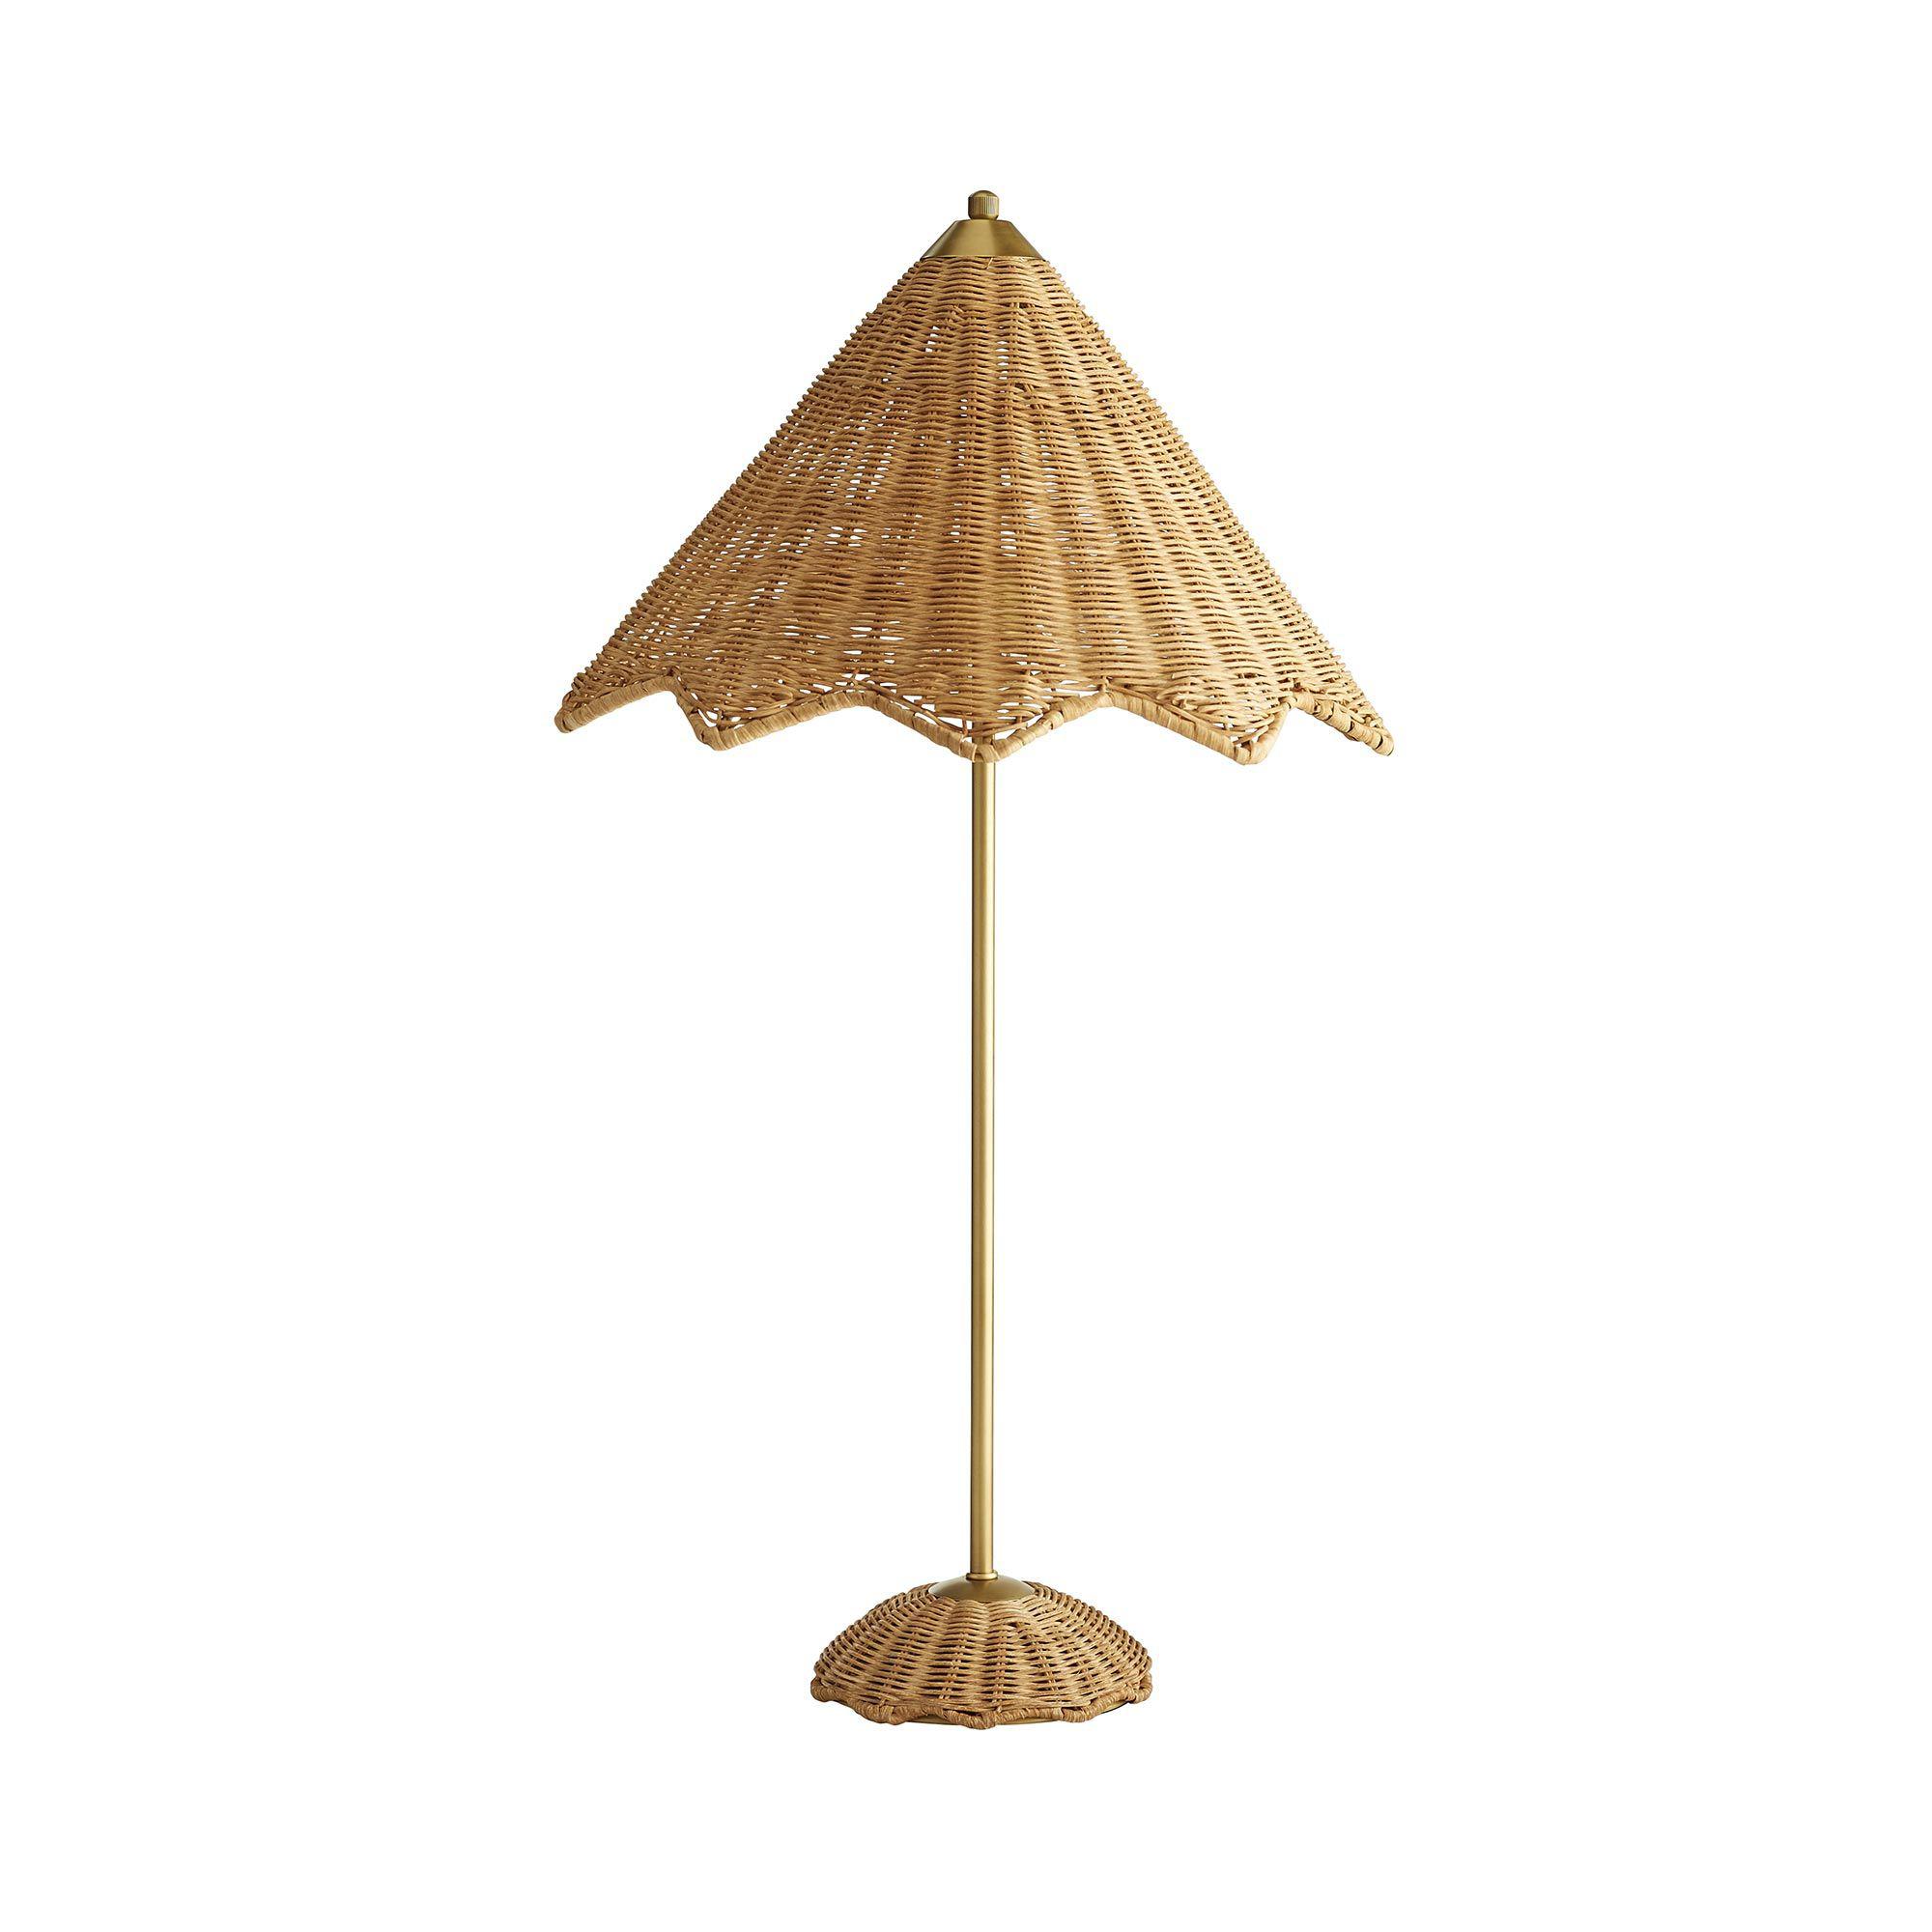 Купить Настольная лампа Parasol Lamp в интернет-магазине roooms.ru